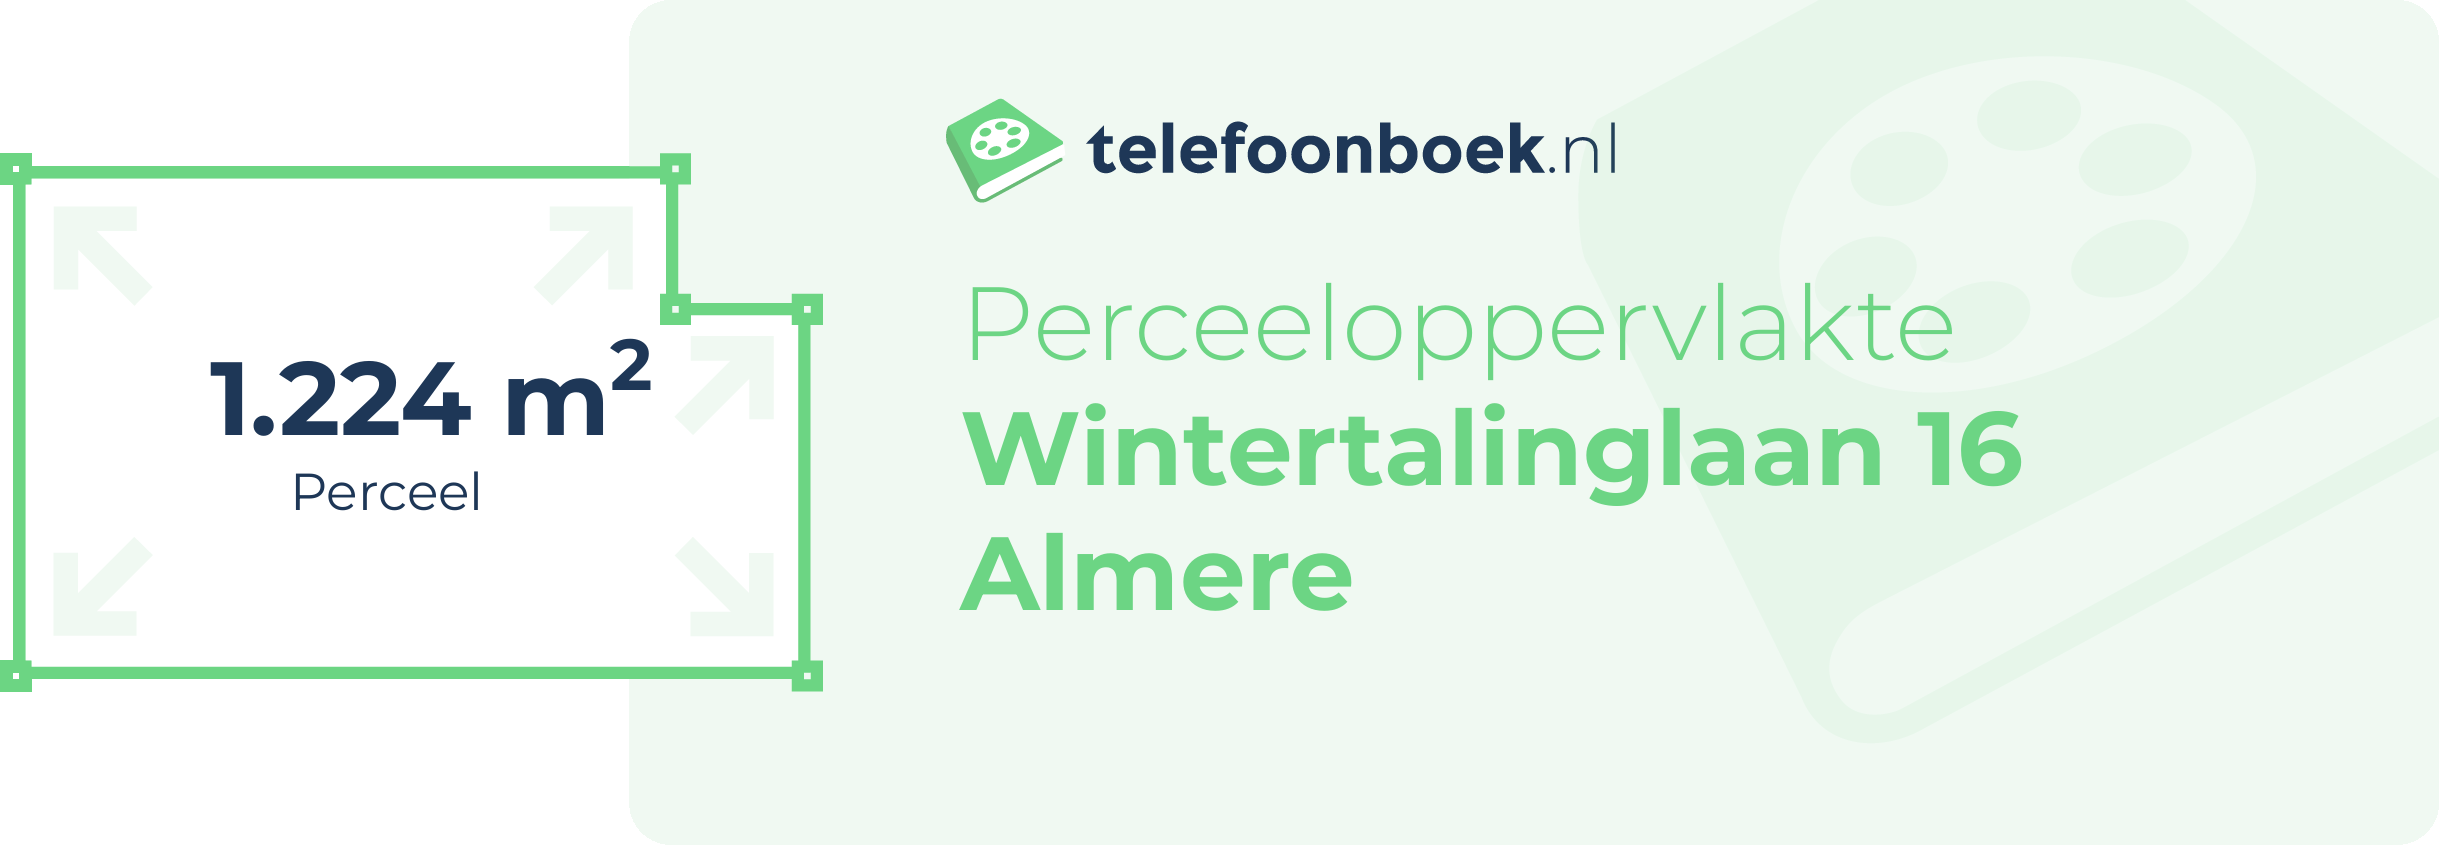 Perceeloppervlakte Wintertalinglaan 16 Almere